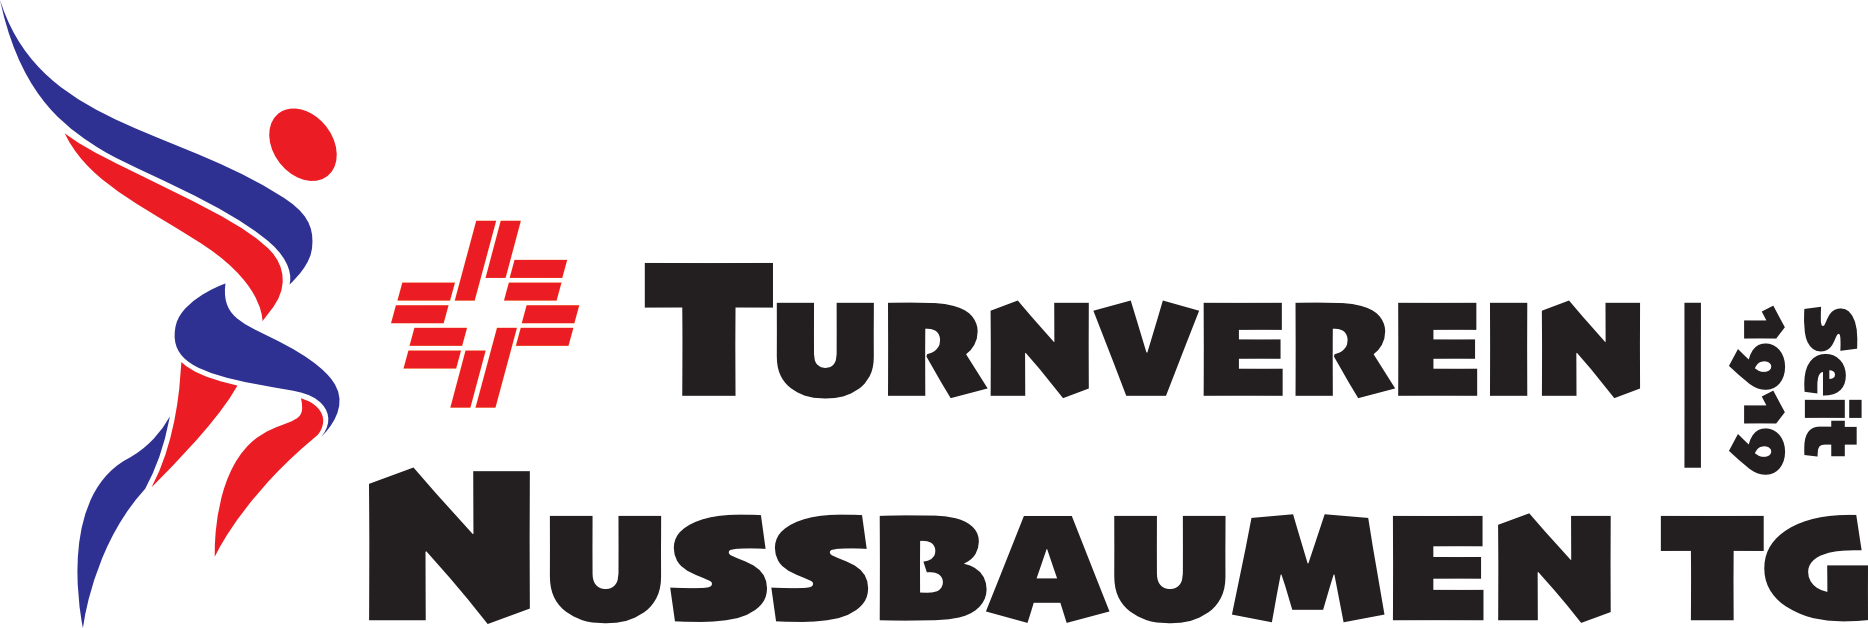 Turnverein Nussbaumen